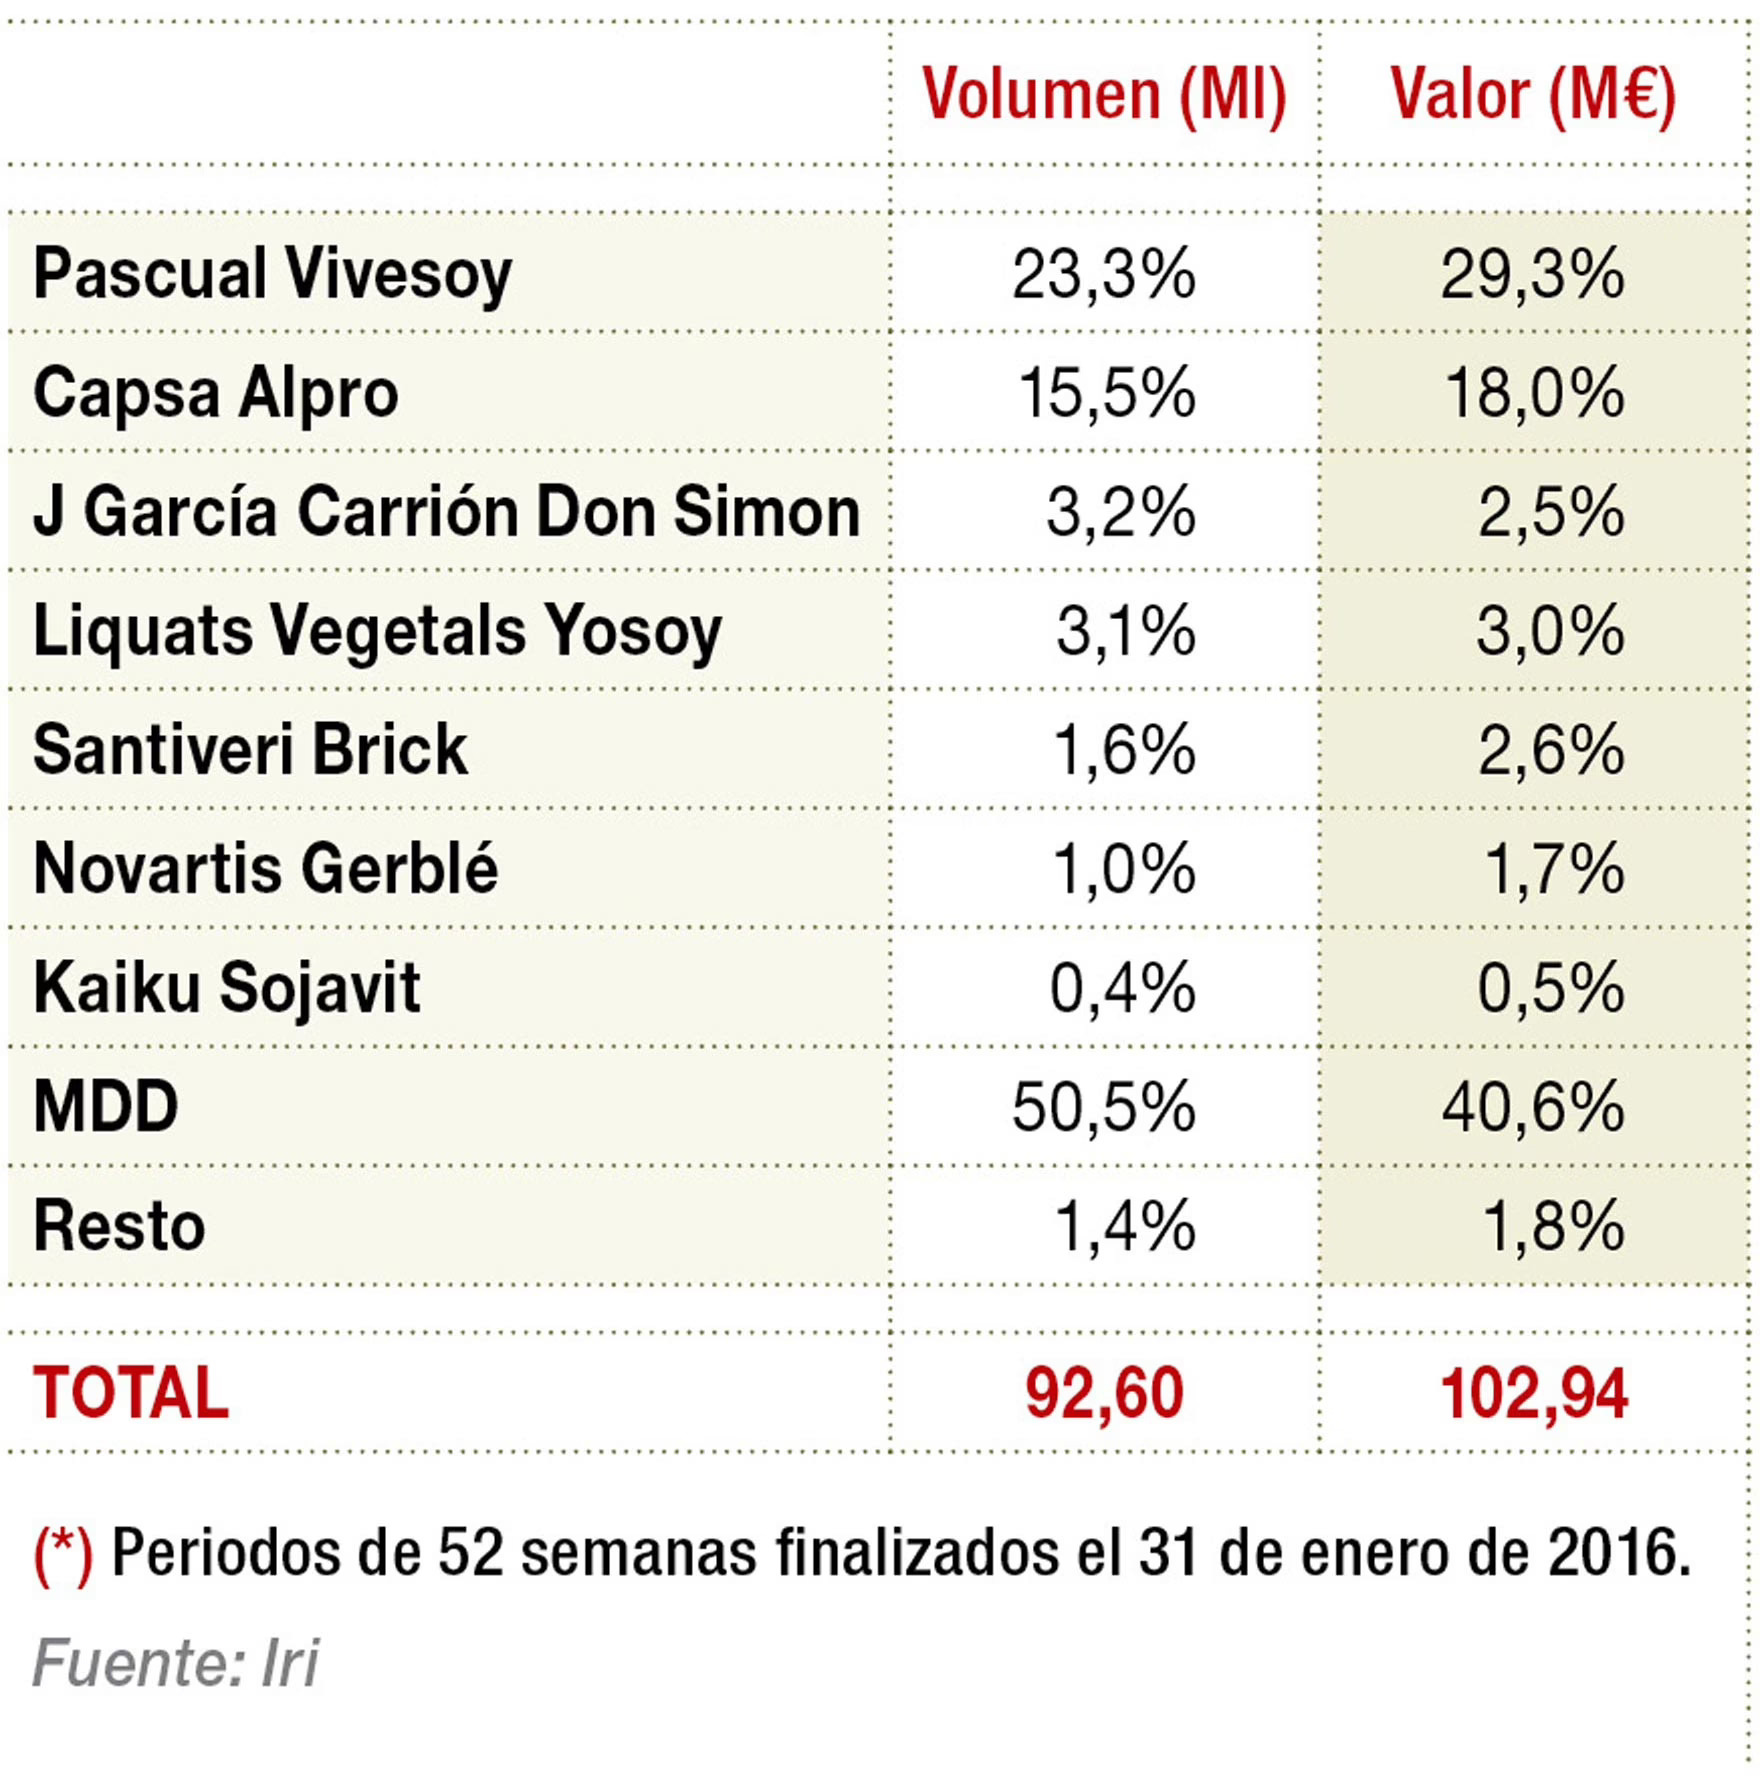 Principales marcas de bebidas de soja en distribución moderna (2015)